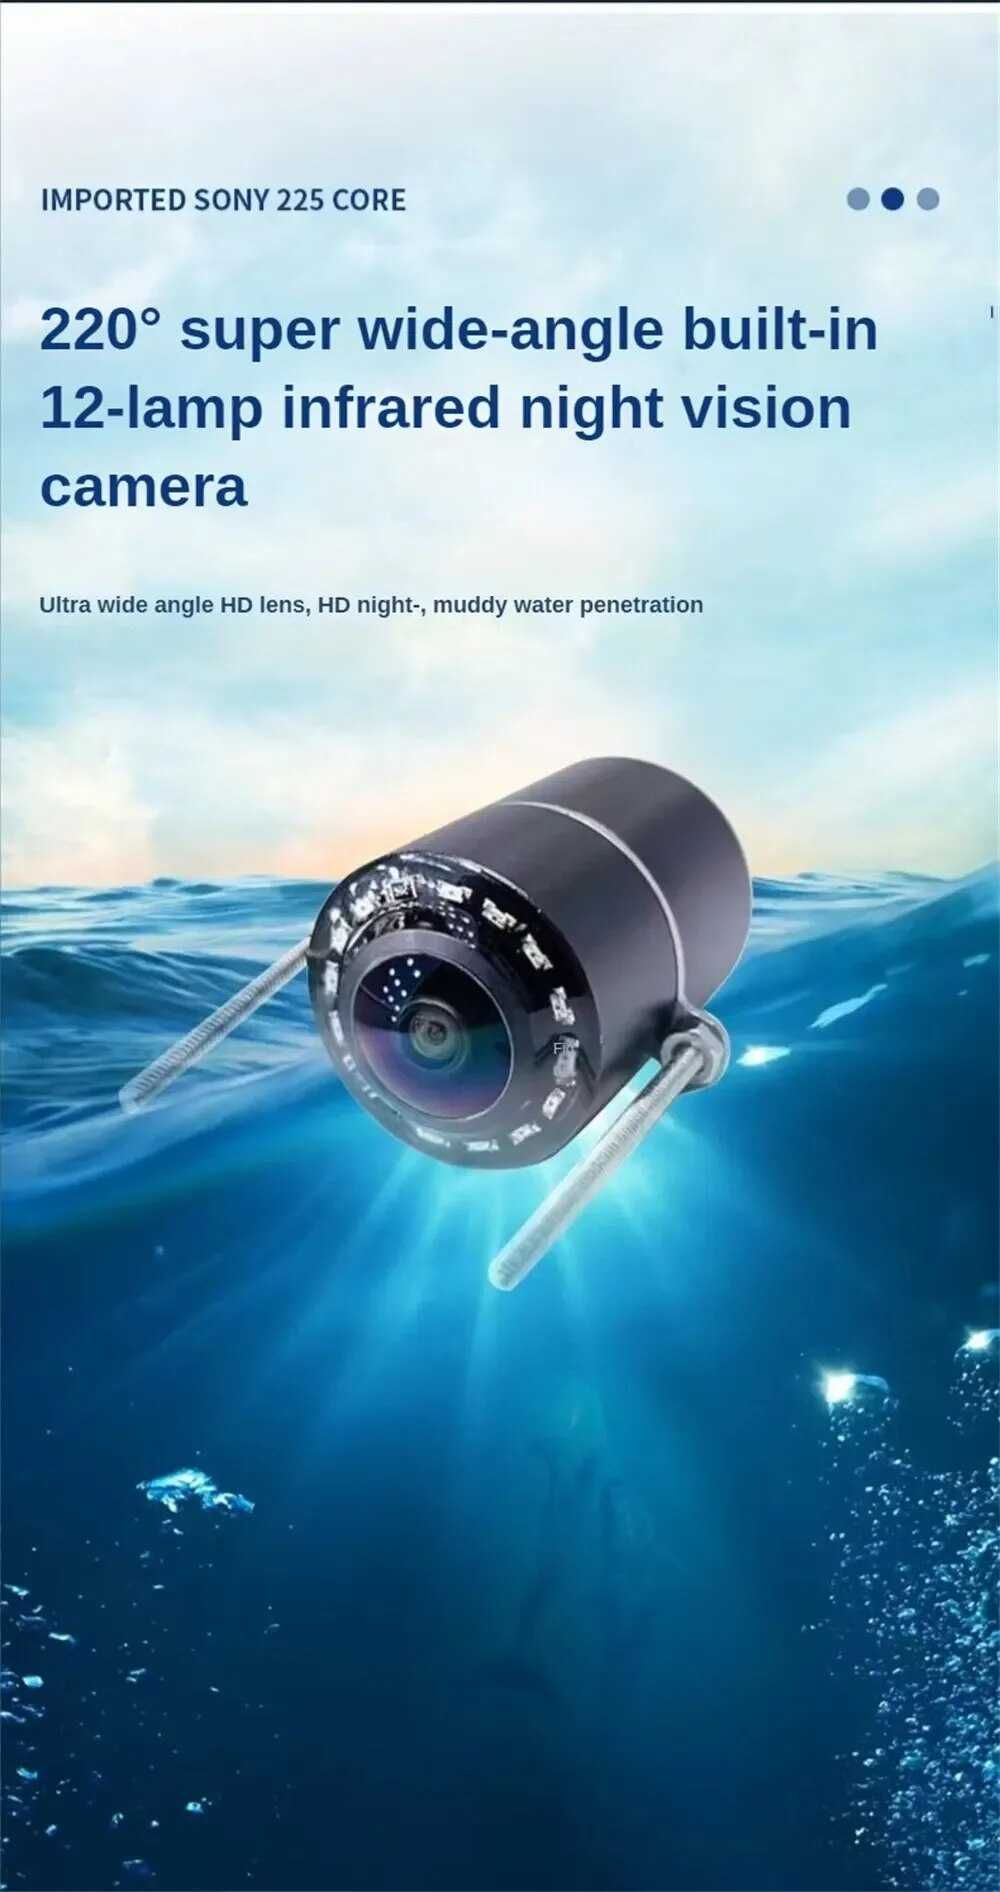 Fish Finder Lokalizator ryb kamera wyświetlacz LCD 4.3